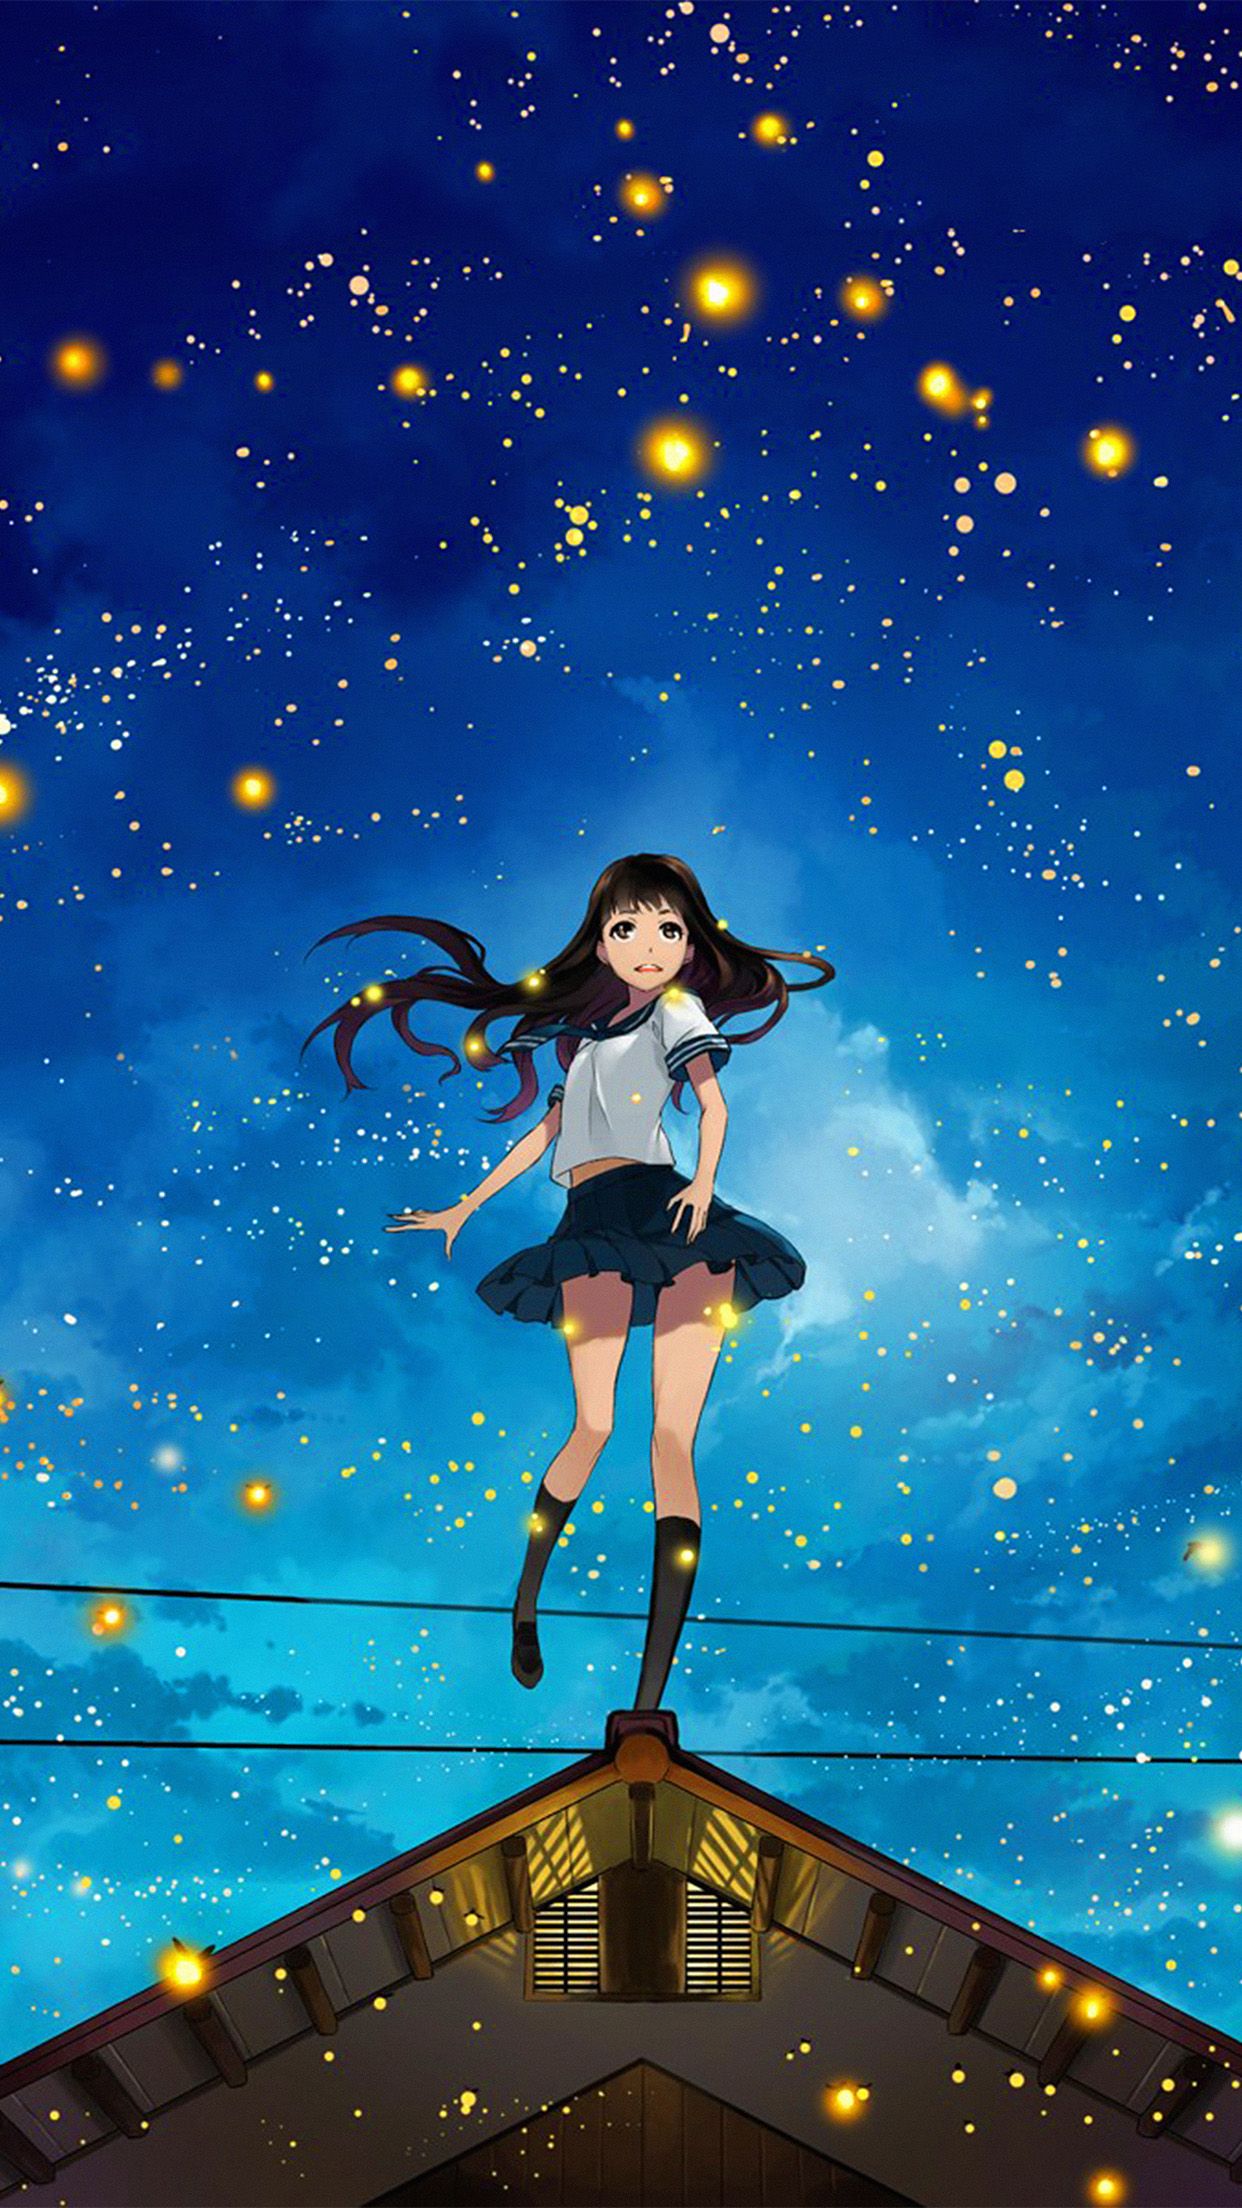 Girl Anime Star Space Night Illustration Art Wallpaper